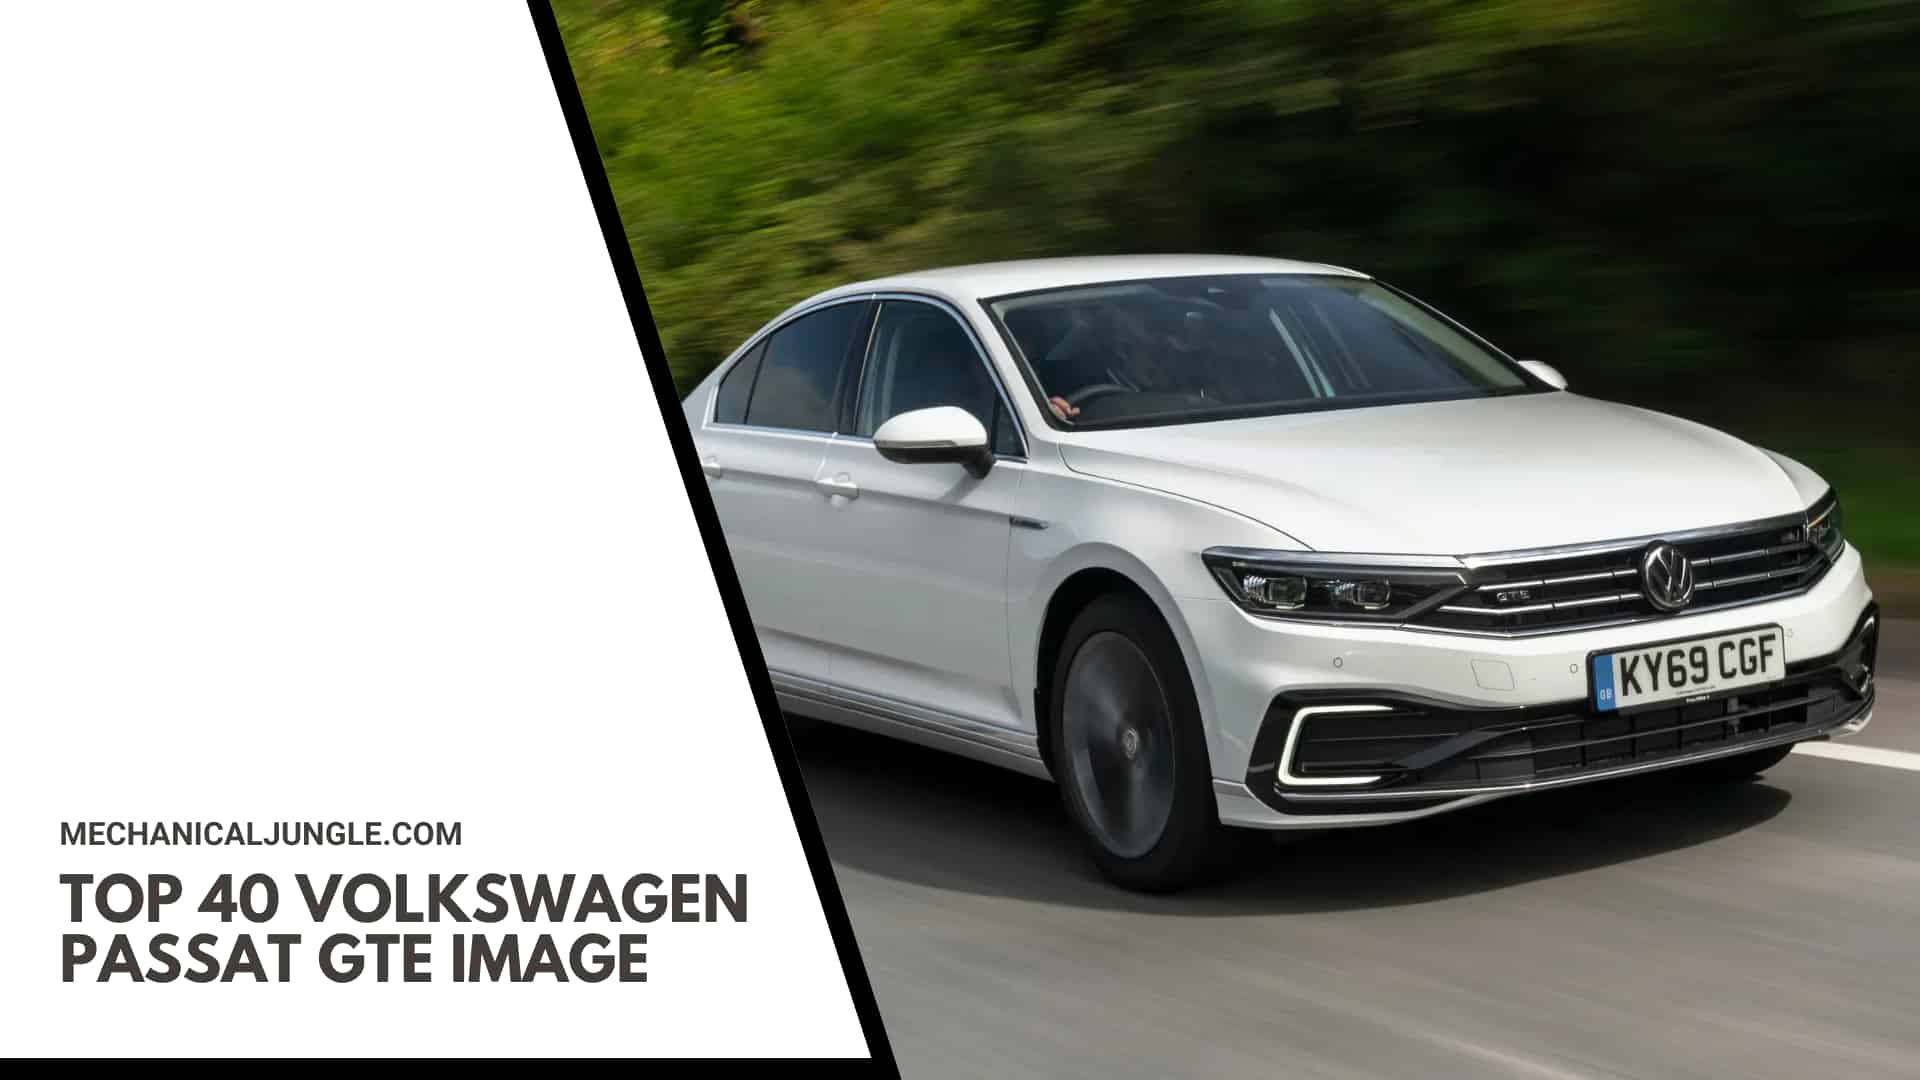 Top 40 Volkswagen Passat GTE Image